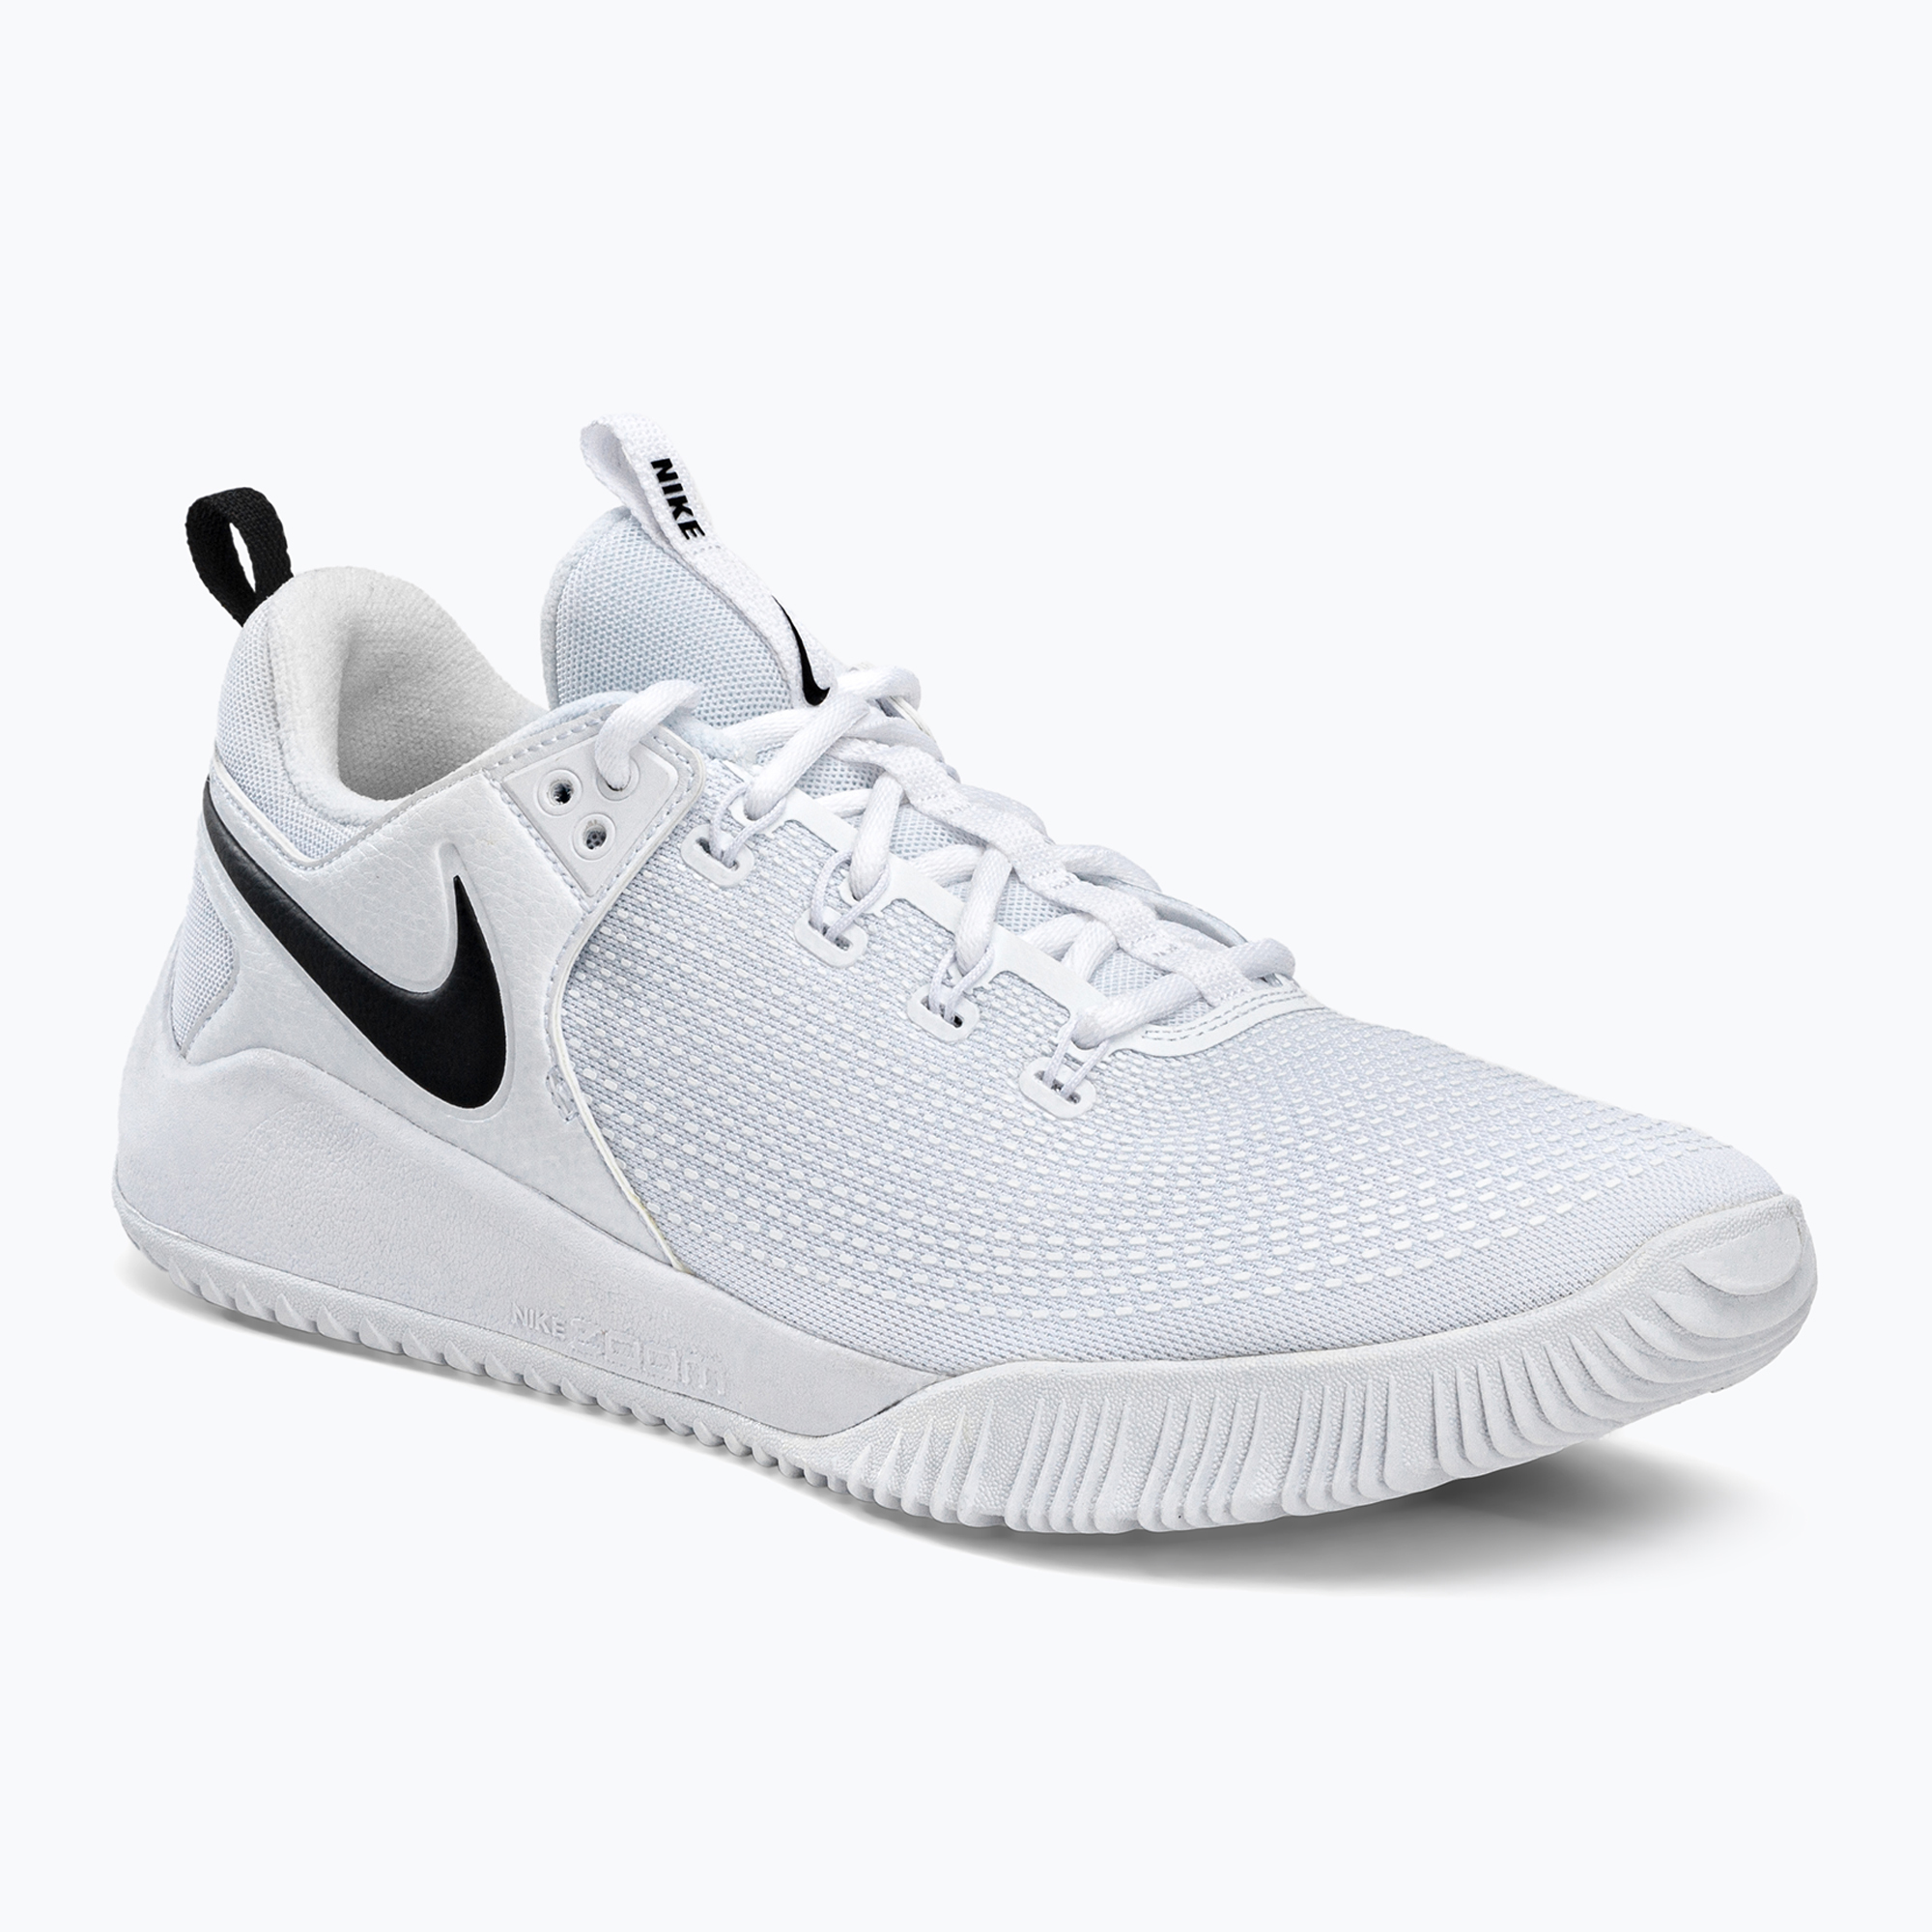 Pánska volejbalová obuv Nike Air Zoom Hyperace 2 white and black AR5281-101